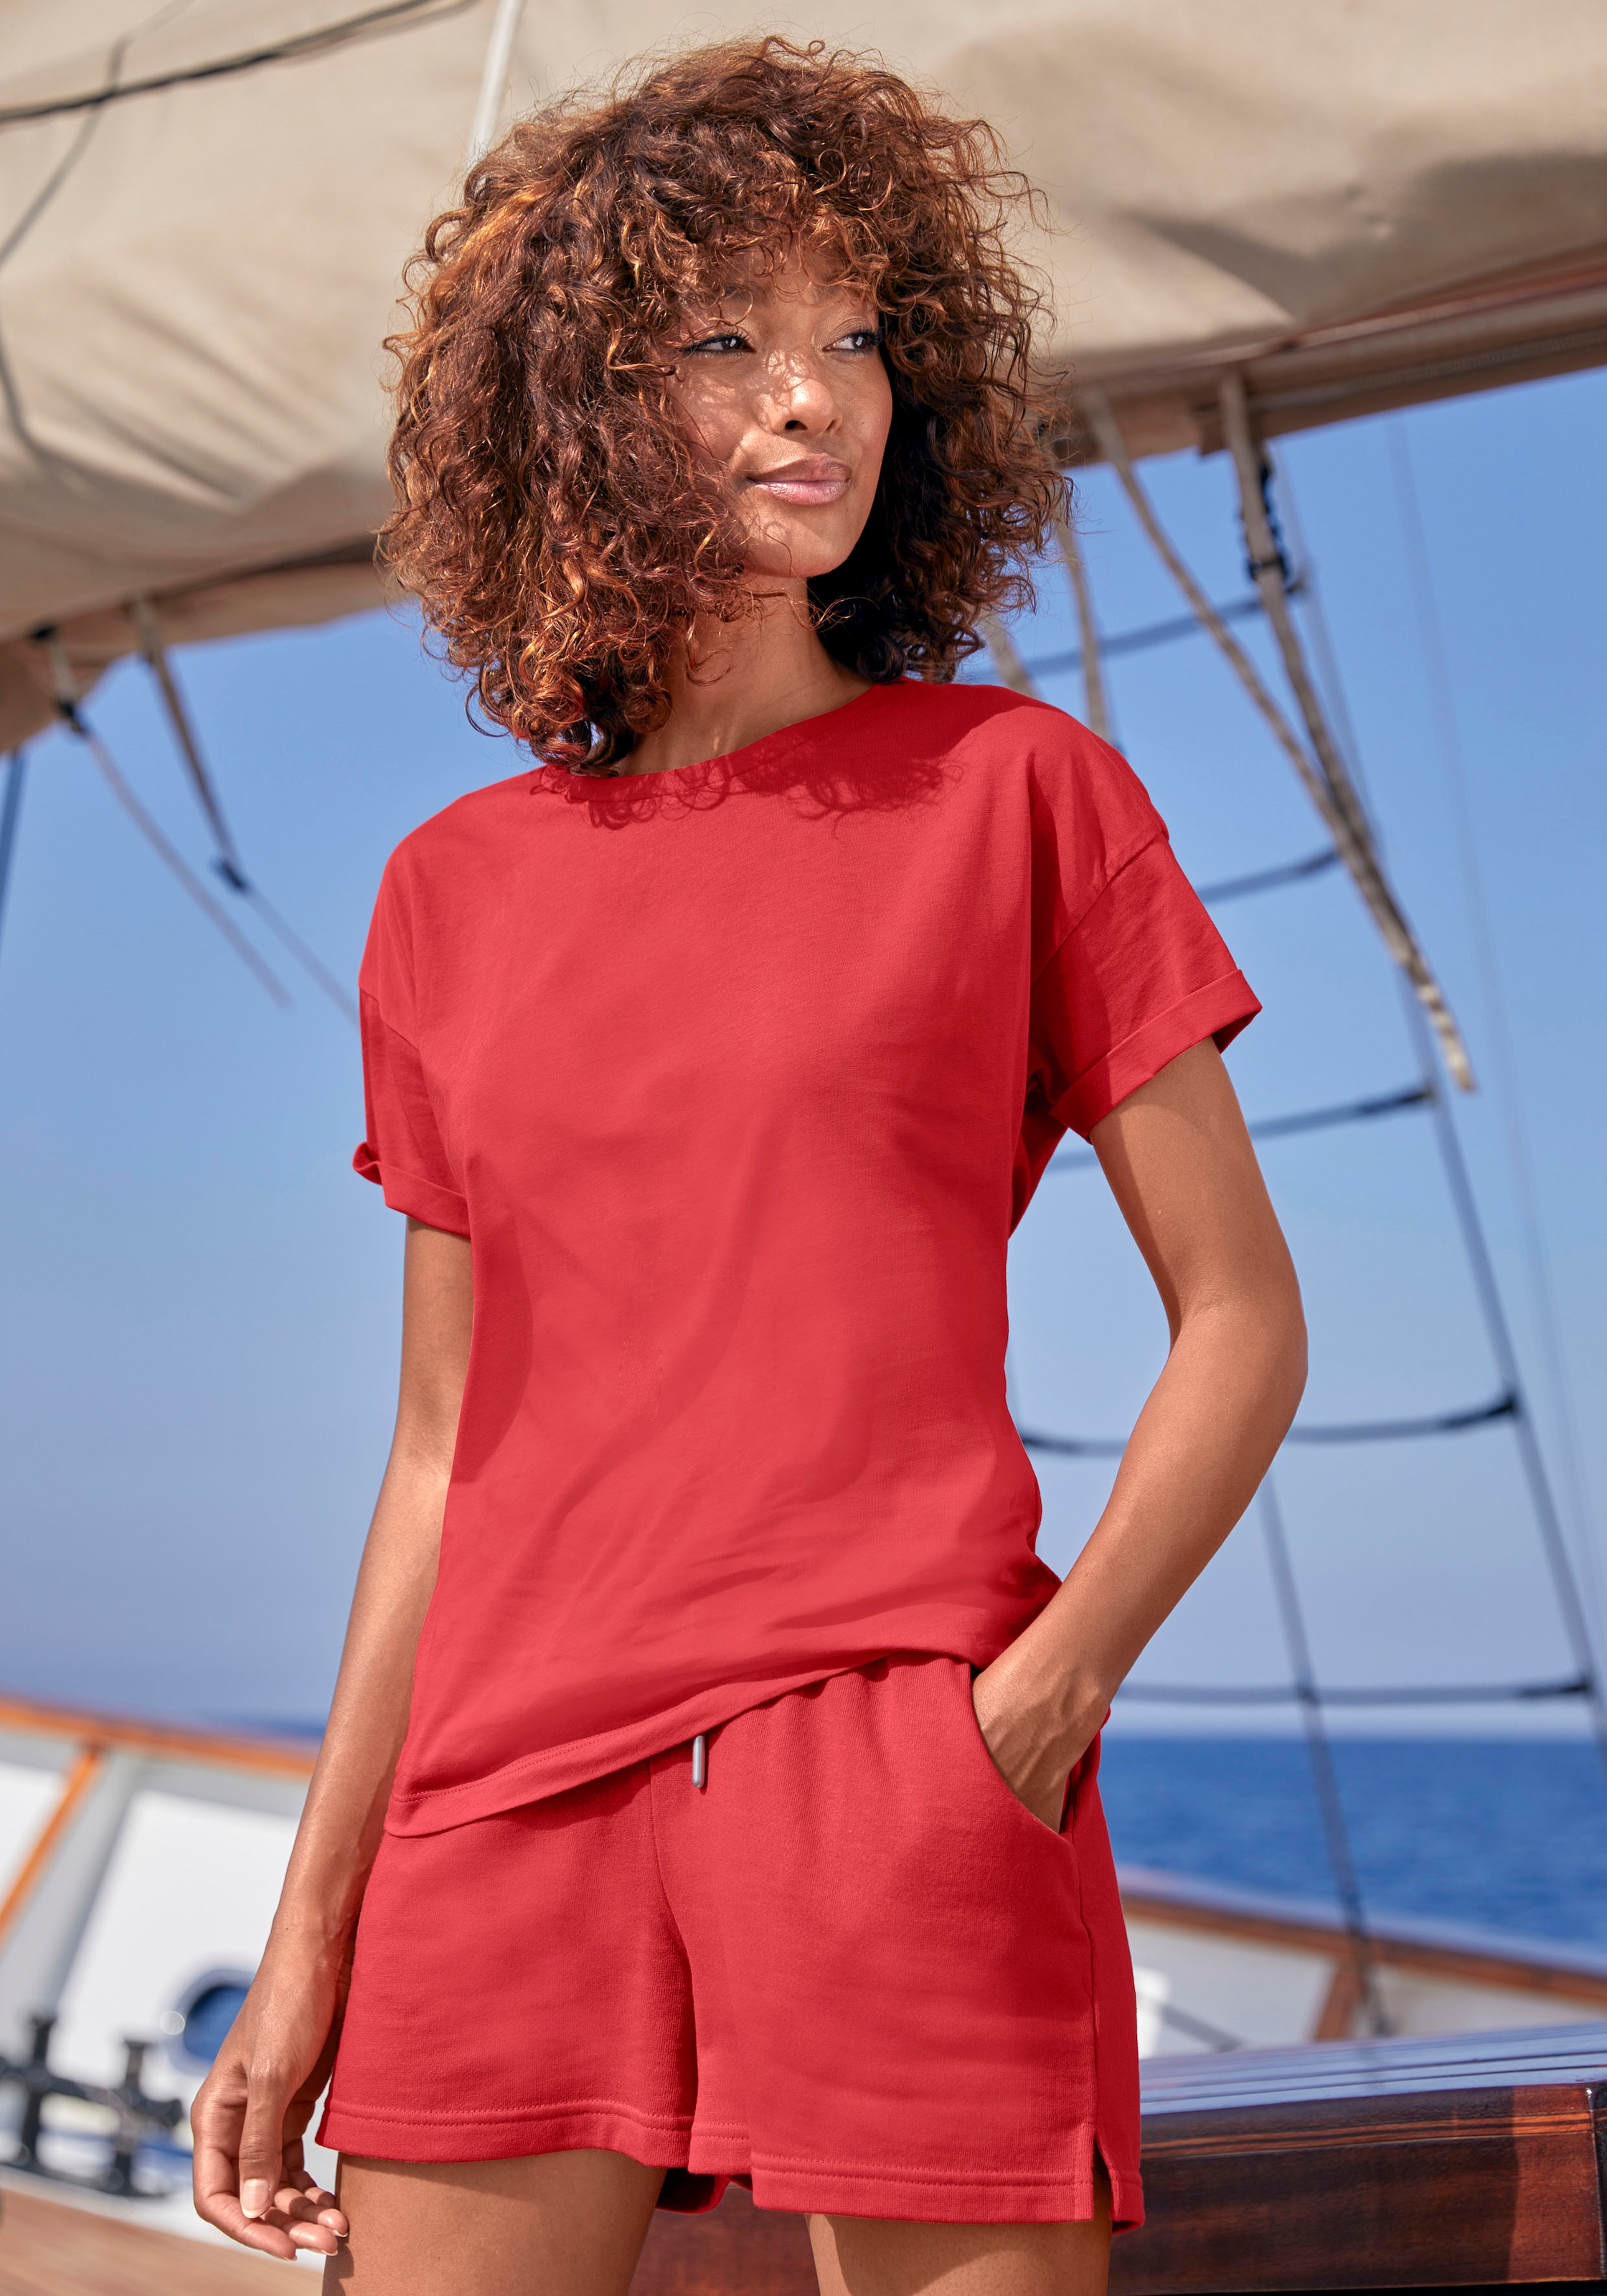 H.I.S T-Shirt »mit Ärmelaufschlag«, im maritimen Stil, Loungewear » LASCANA  | Bademode, Unterwäsche & Lingerie online kaufen